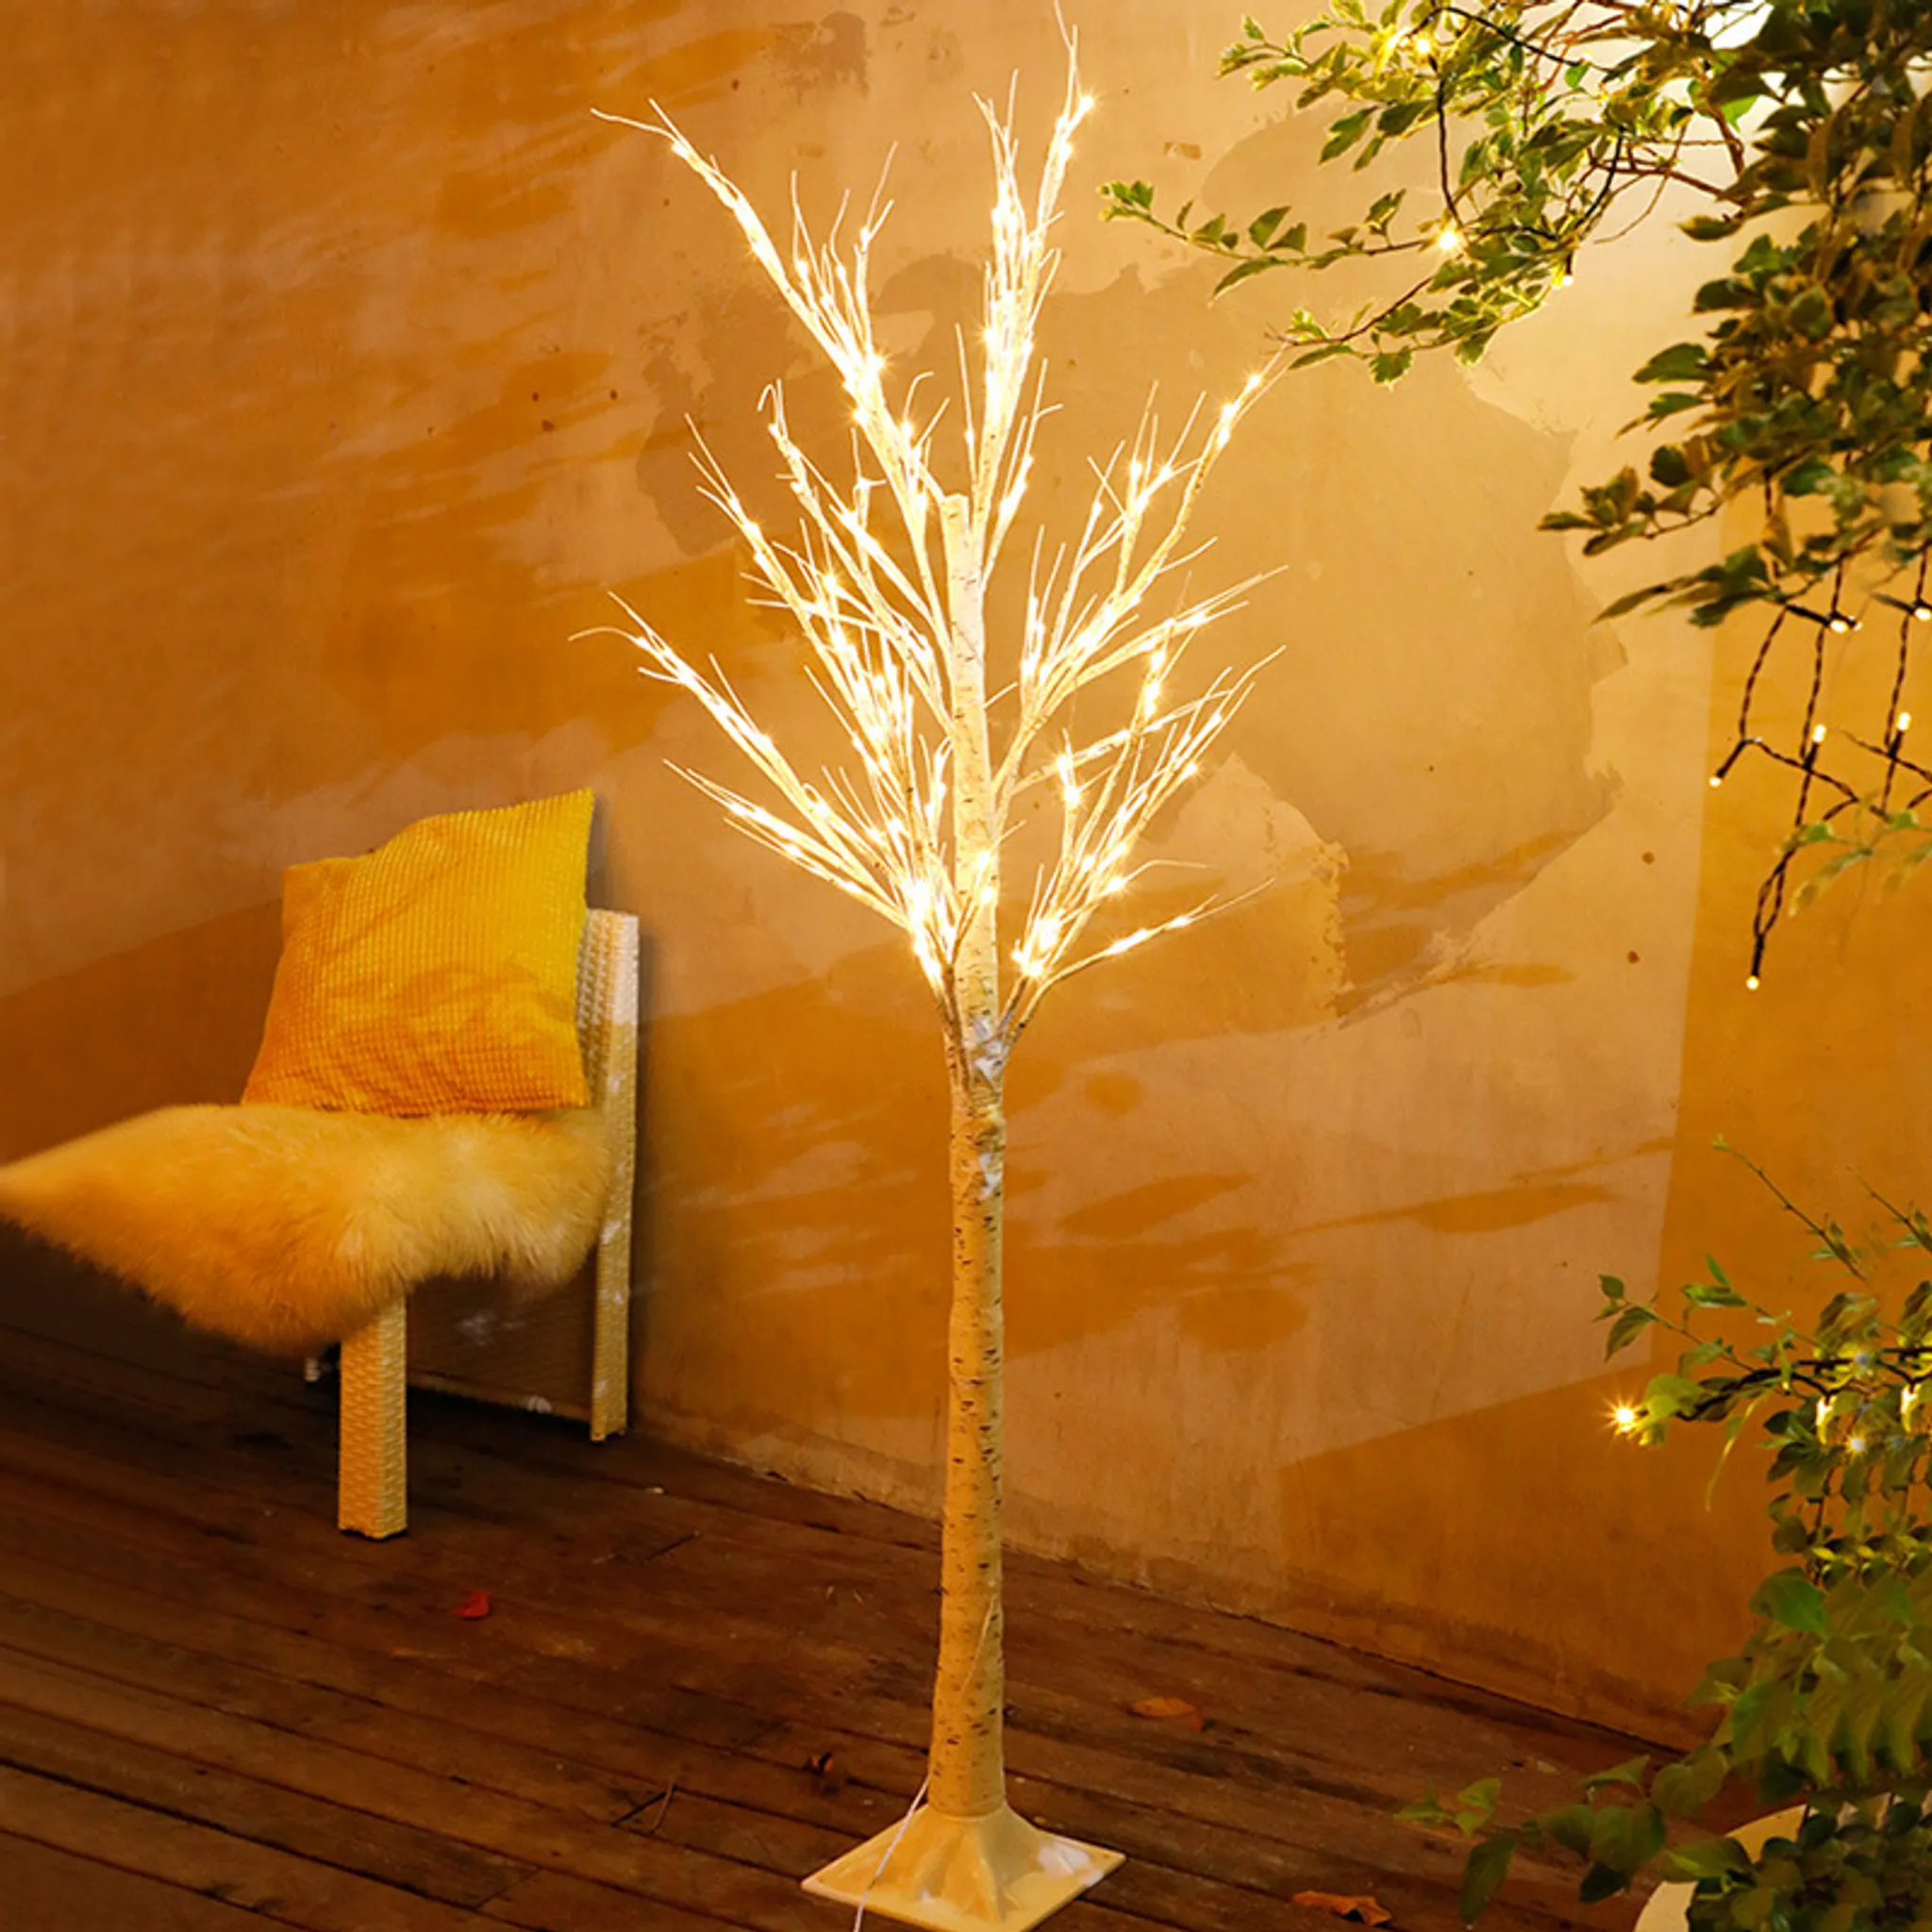 LED Kupferdraht Baum Lampe Weiß Künstlich